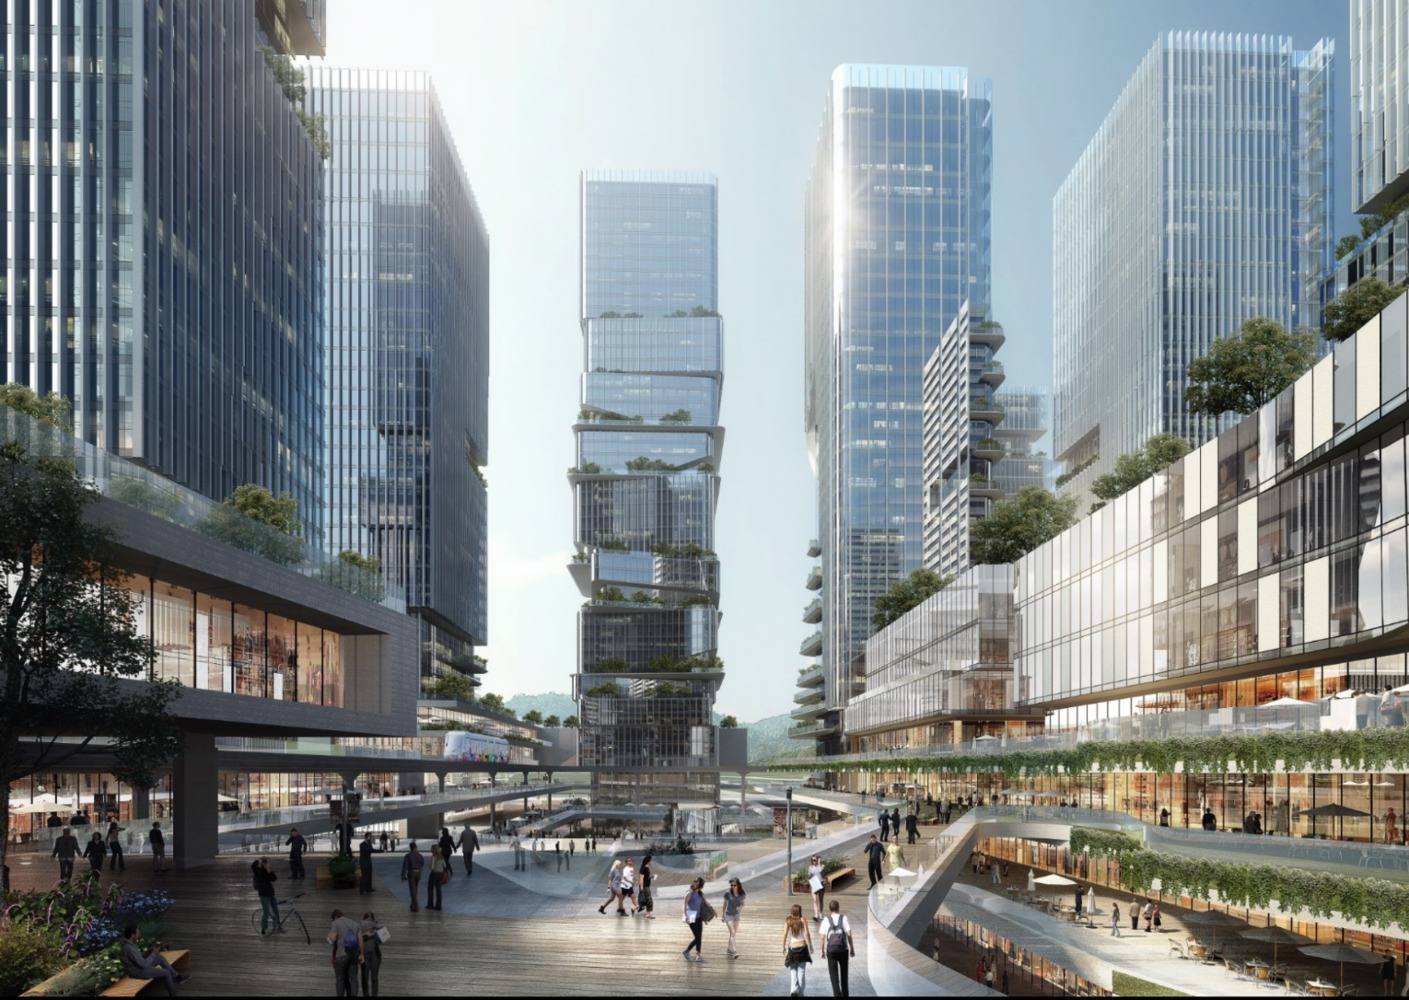 横琴万象世界国际商贸综合体广场通道规划设计